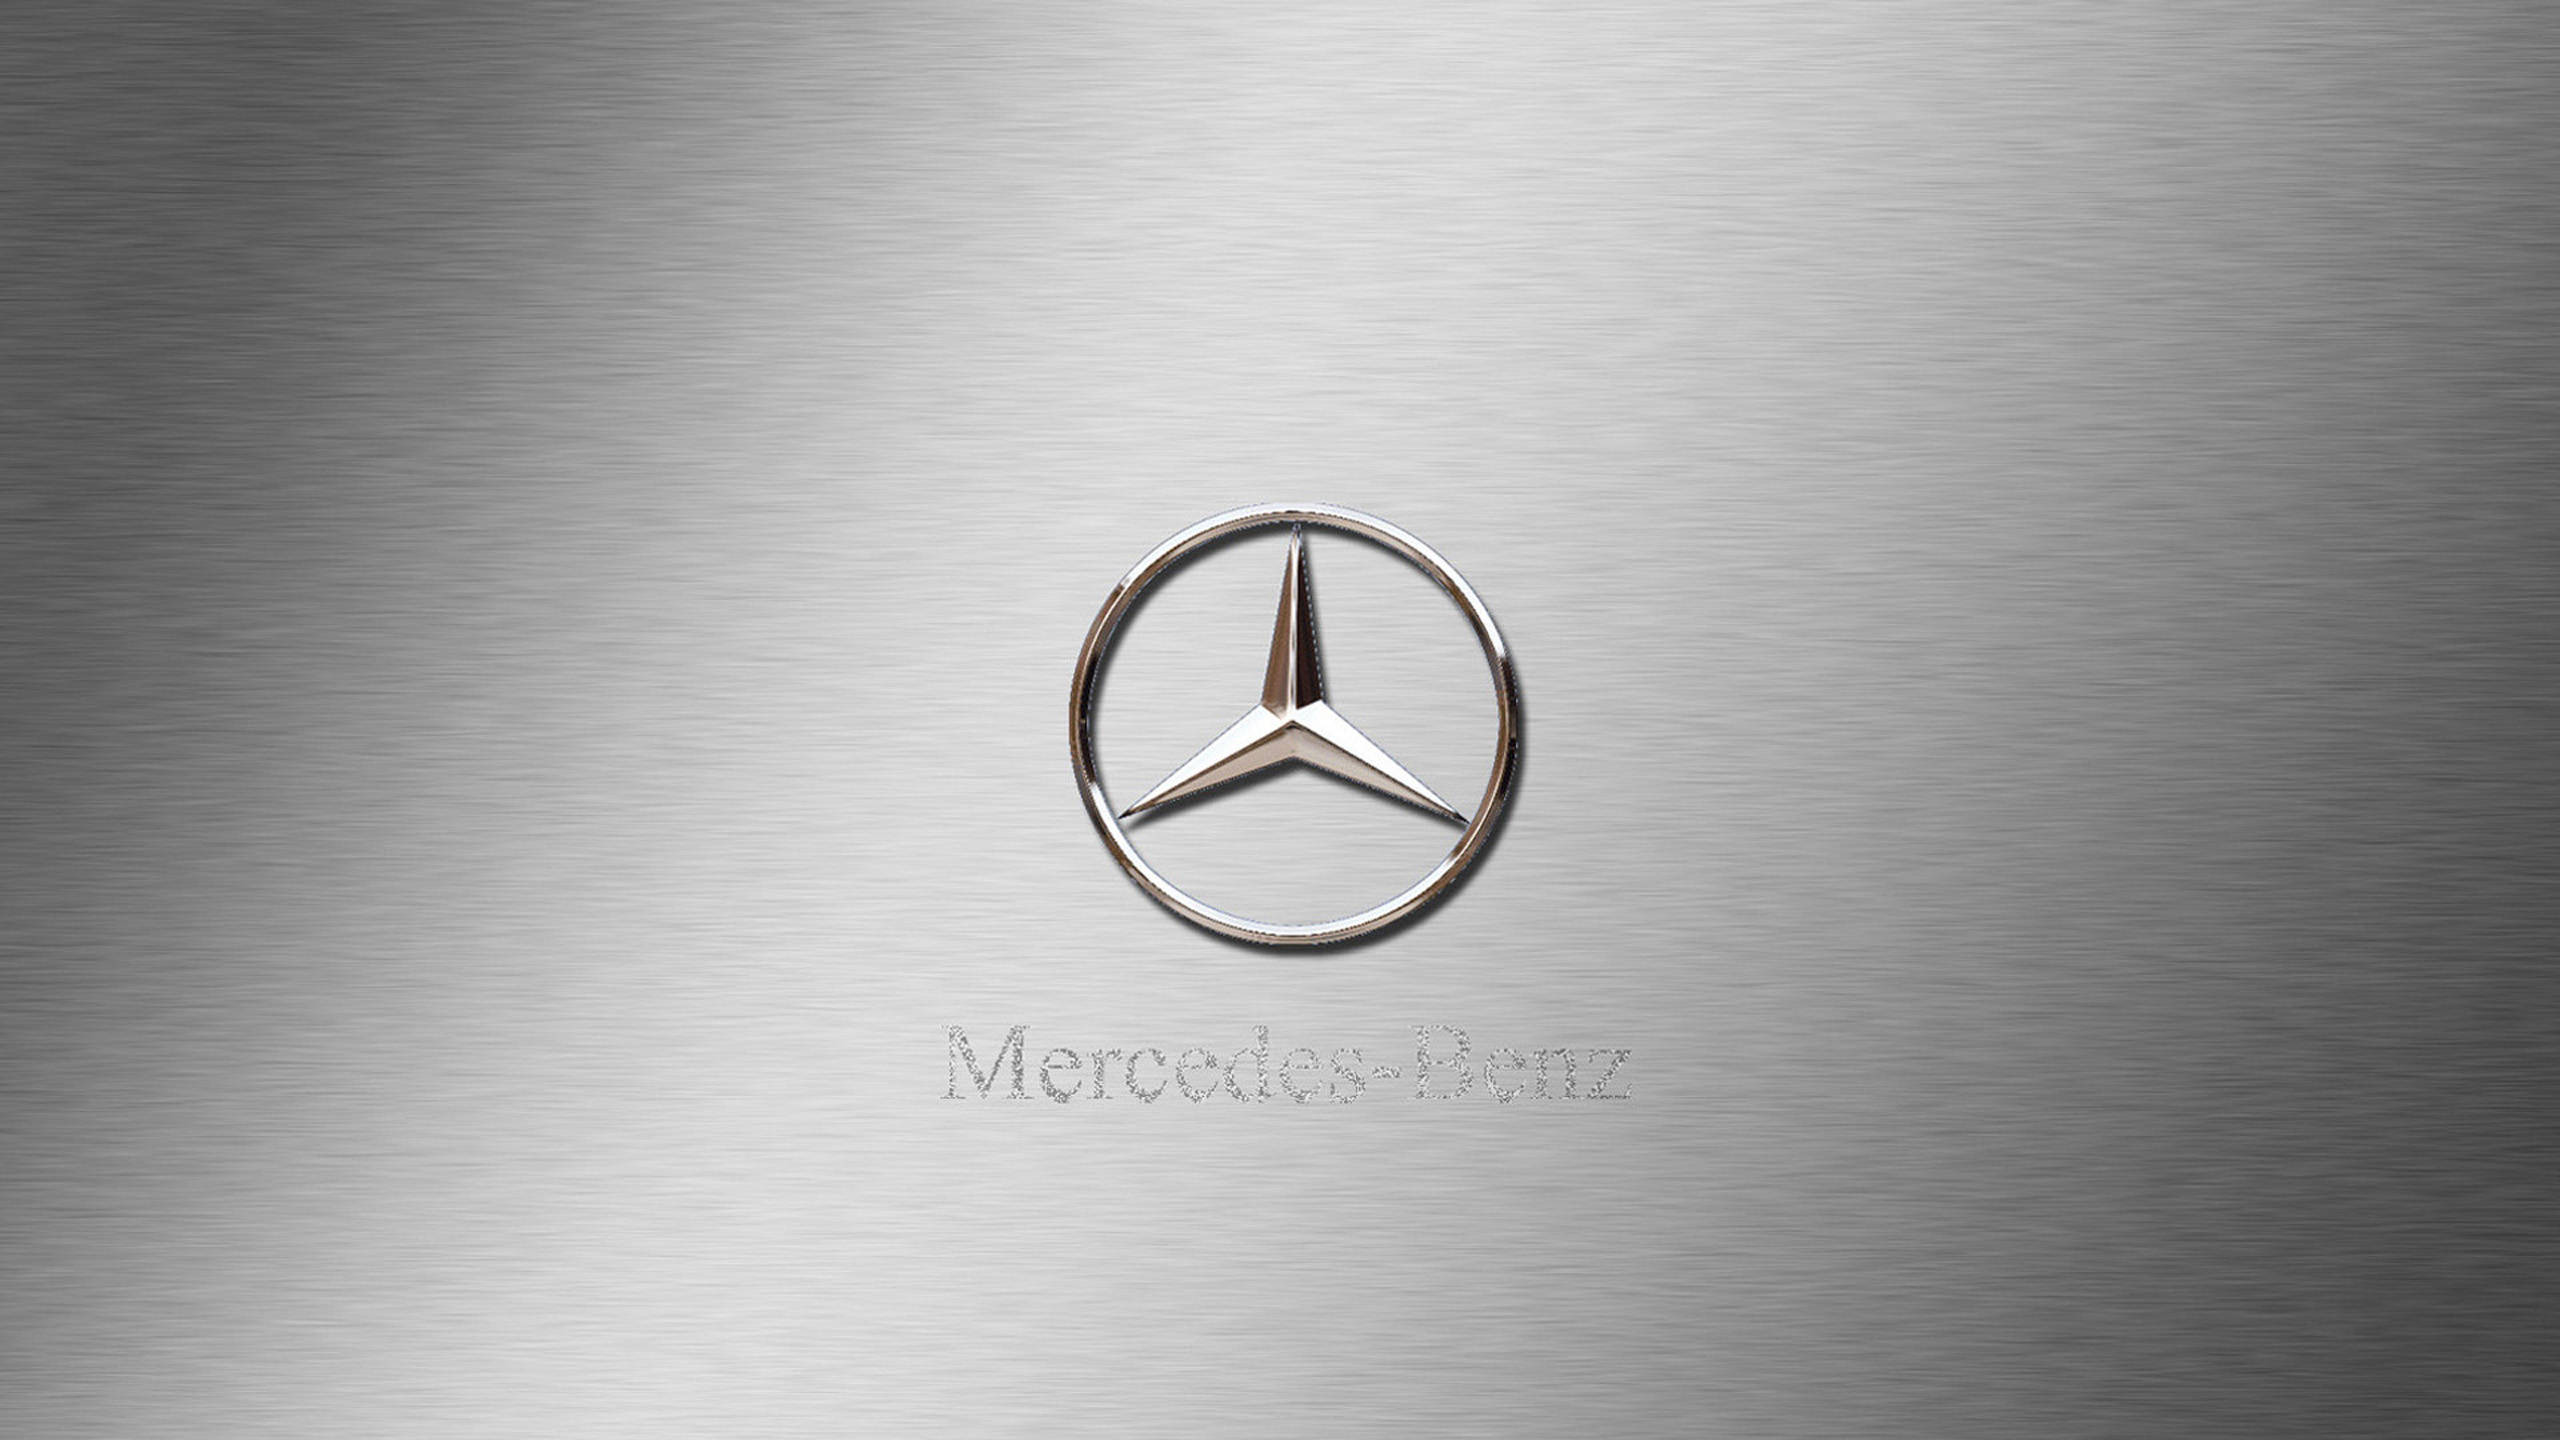 戴姆勒, 梅赛德斯-奔驰SLR迈凯轮, 圆圈, 梅赛德斯-奔驰E级, 品牌 壁纸 2560x1440 允许